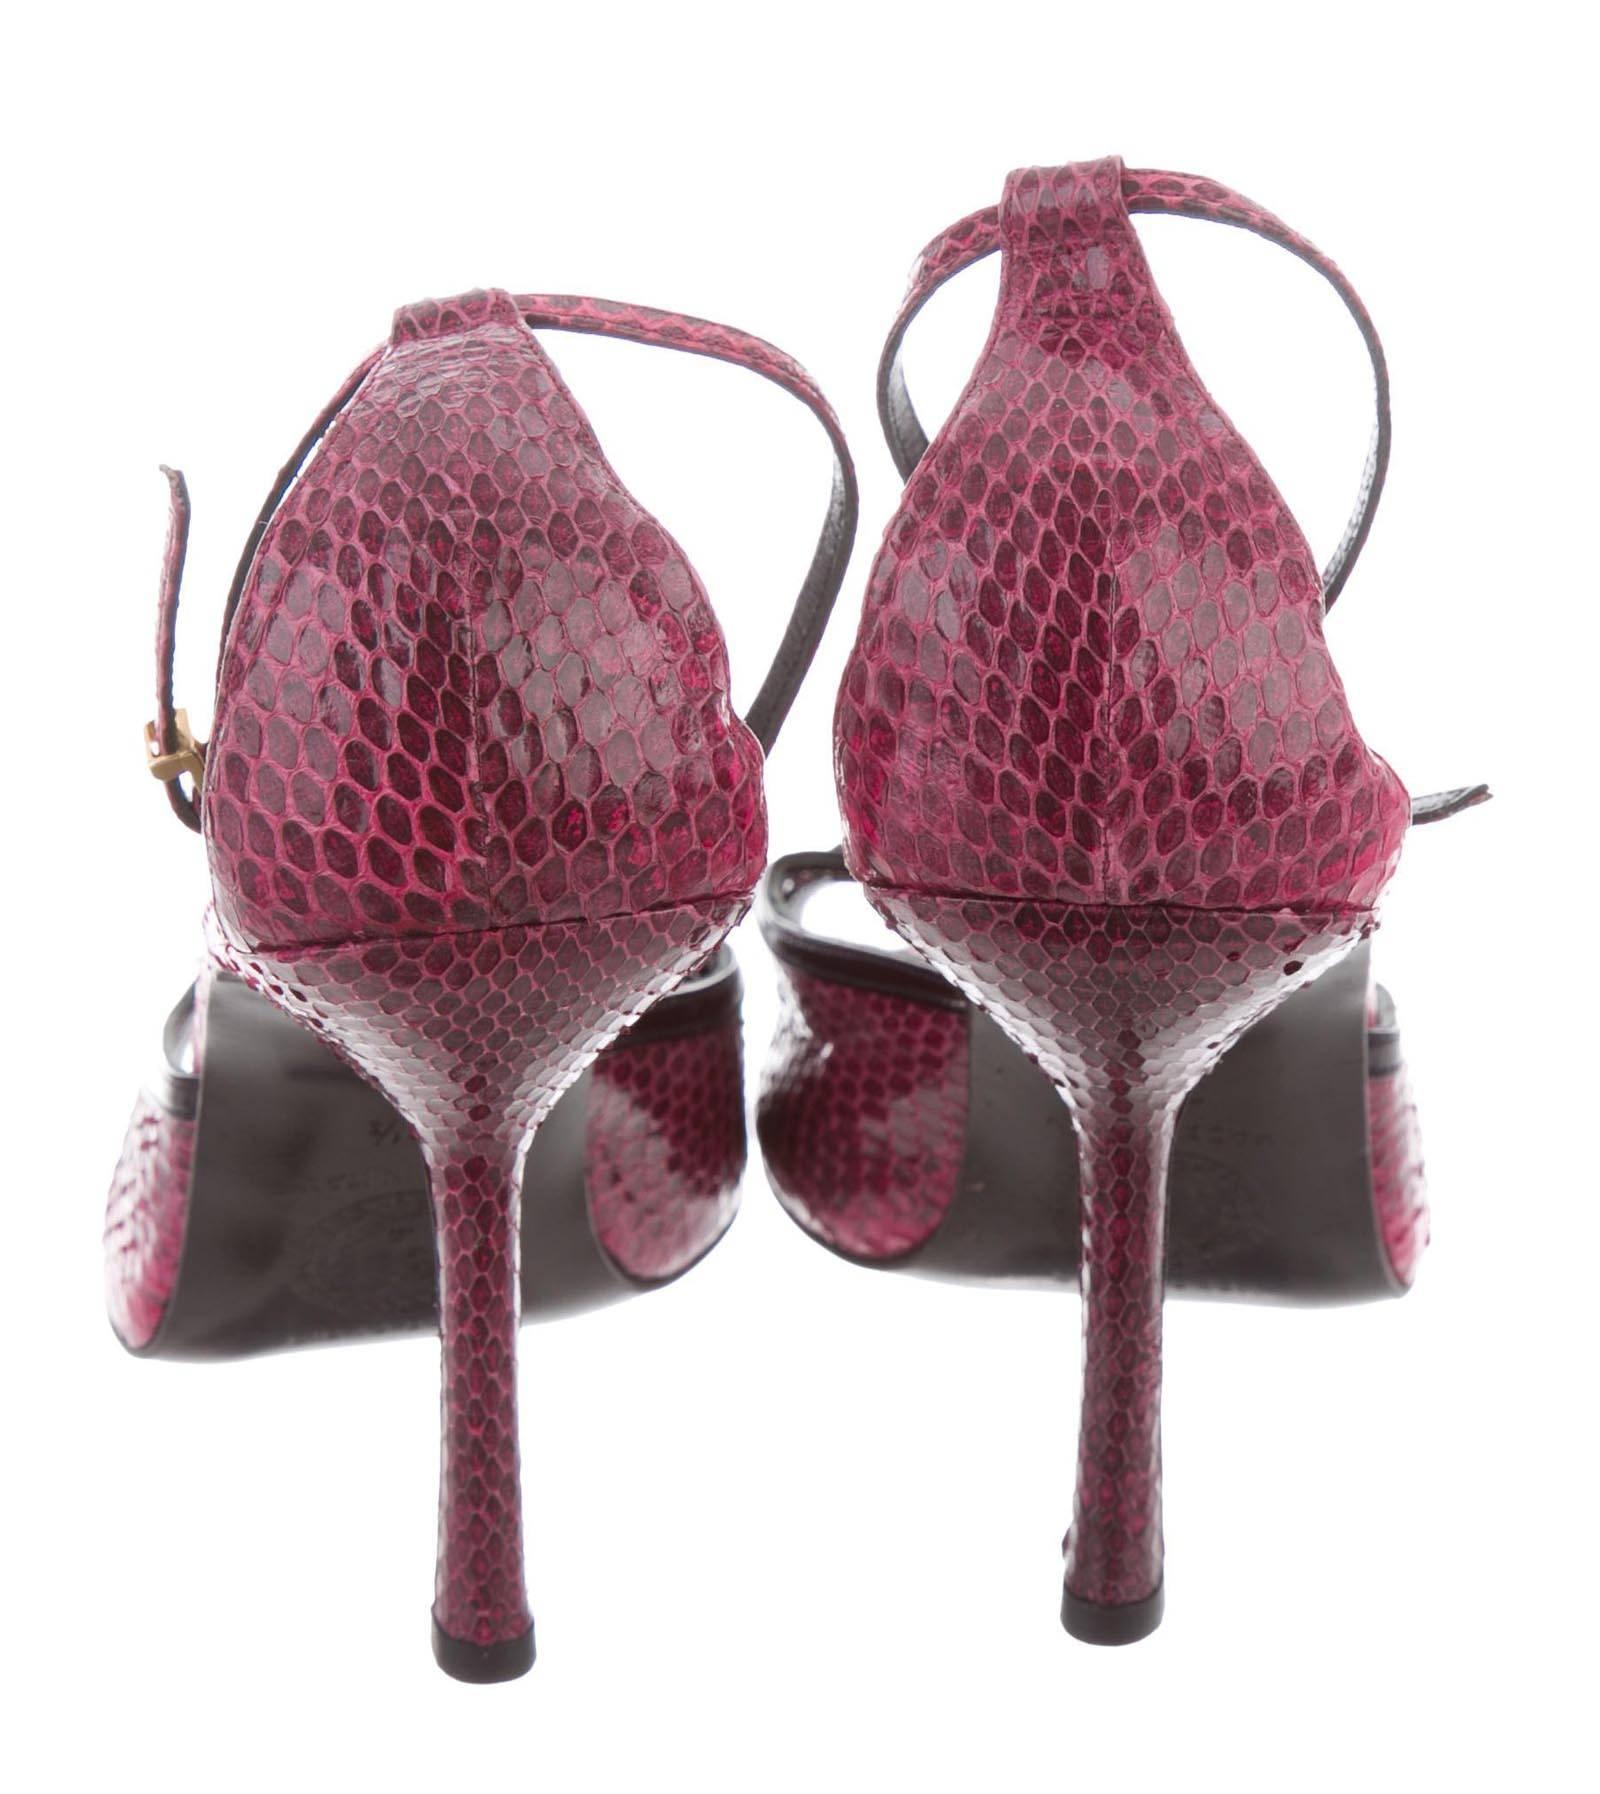 Marron New Gianni Versace F/W 2000 Raspberry Snakeskin Peep-toe Shoes Sandals 39.5  9.5 en vente